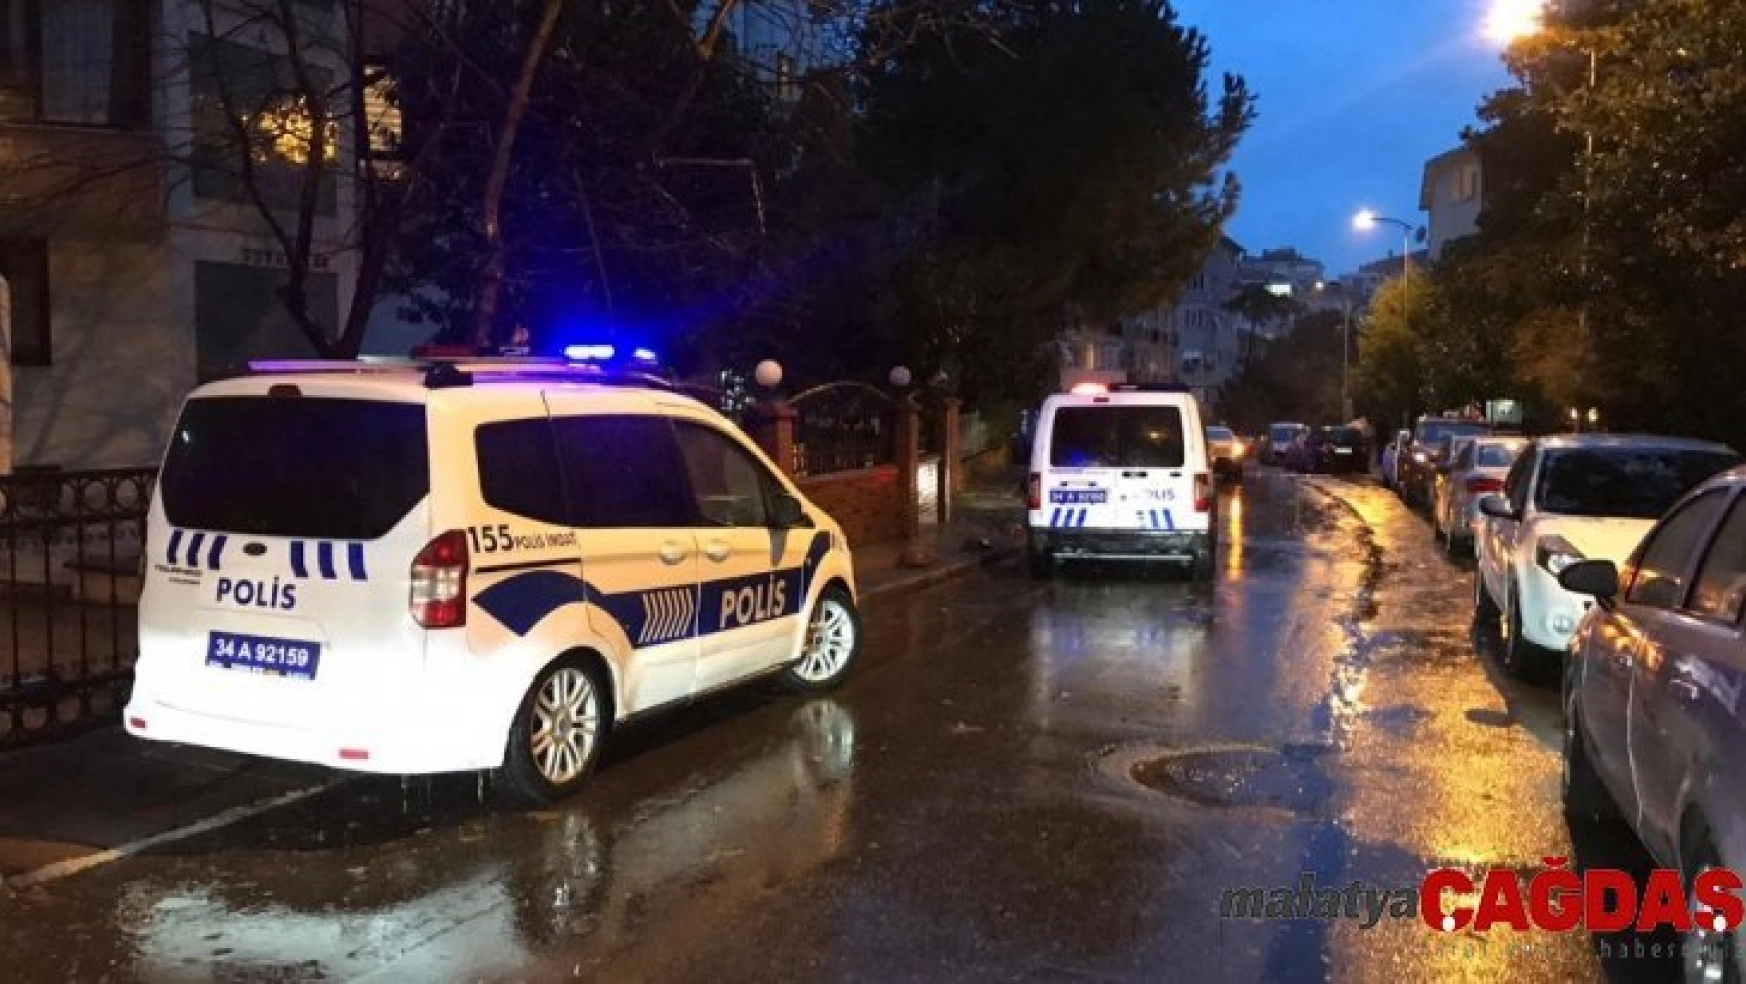 Kadıköy'de hırsızlık şüphelileri polise ateş açtı: 1 polis yaralı